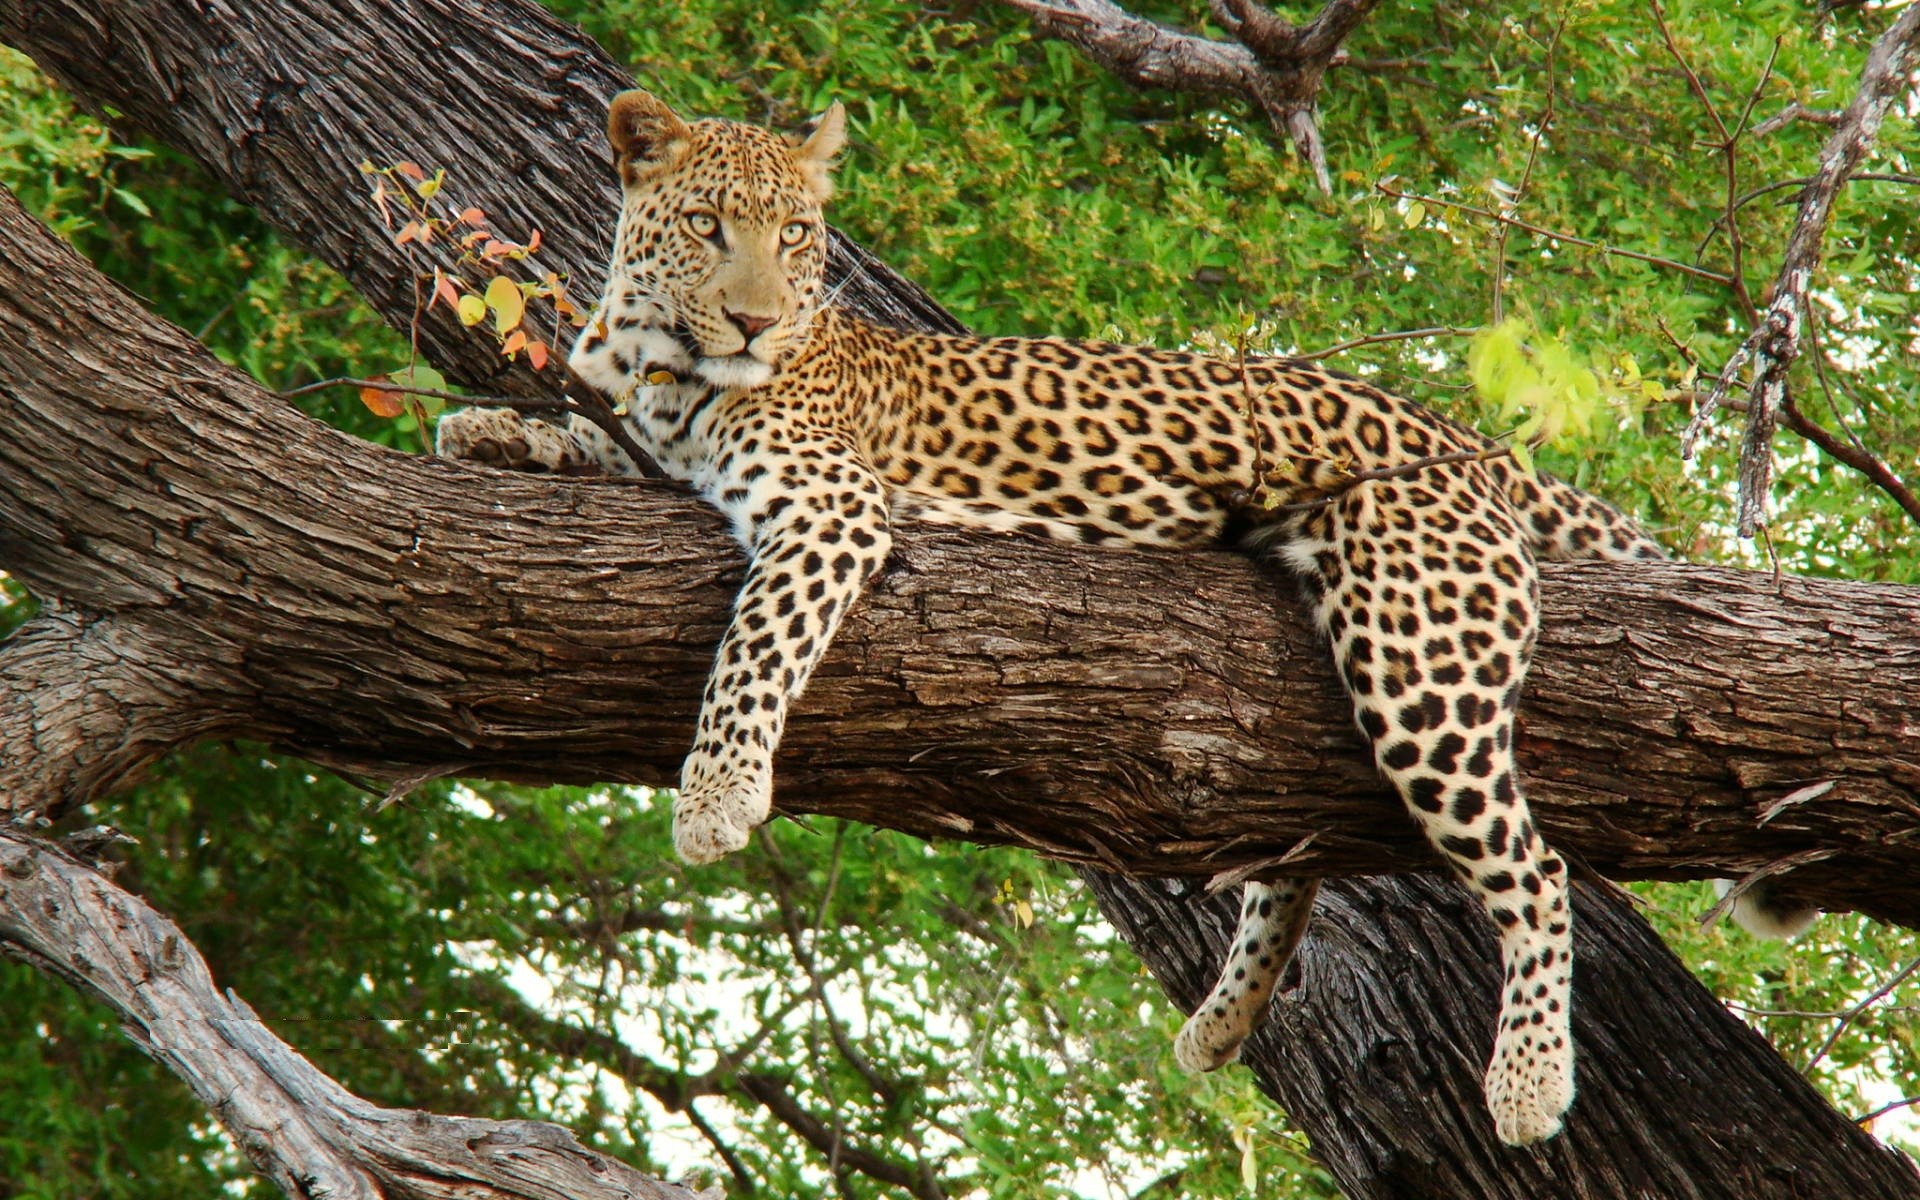 fond d'écran hd 1080p téléchargement gratuit pour mobile,animal terrestre,faune,léopard,félidés,jaguar